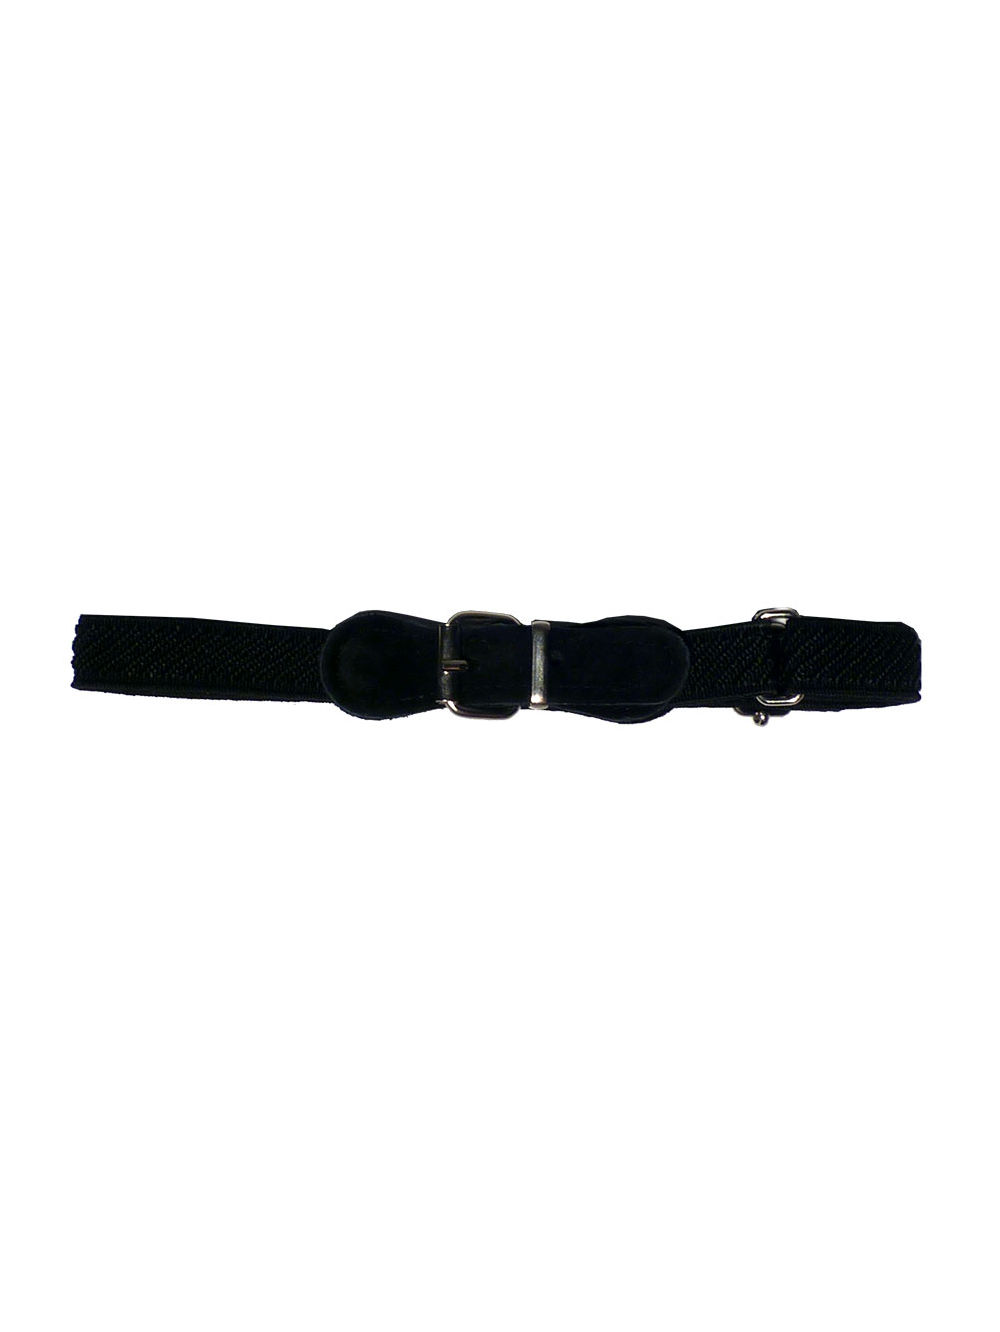 Imagen producto Cinturon elastizado regulable. 14